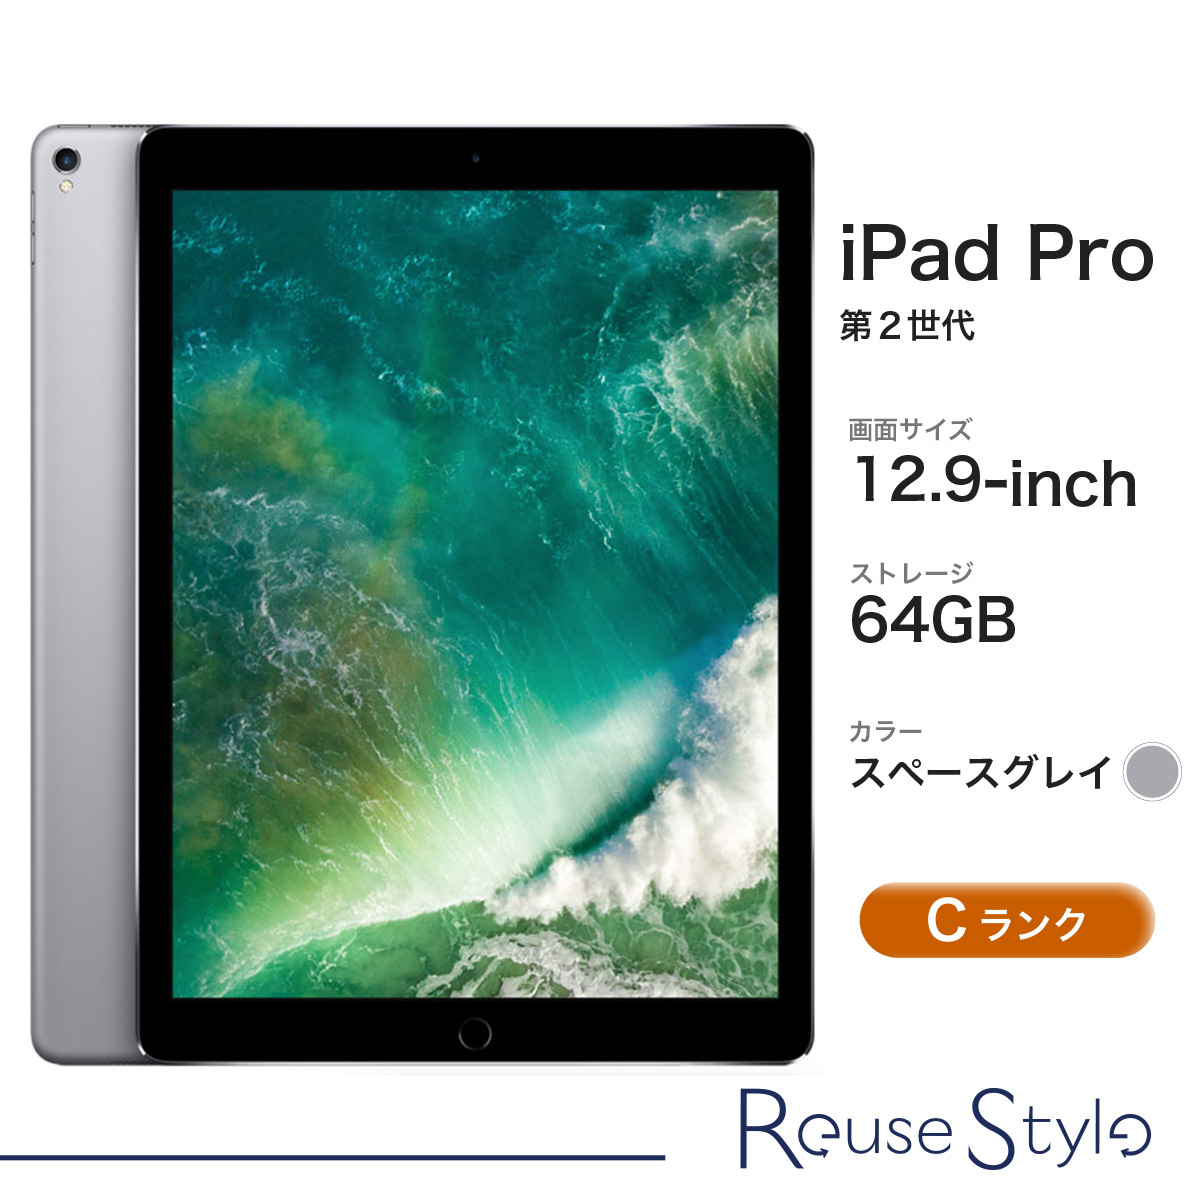 iPad Pro 12.9-inch (第2世代) Wi-Fiモデル Cランク スペースグレイ  64GB 3D113J/A 2017年モデル 店頭展示機の画像1